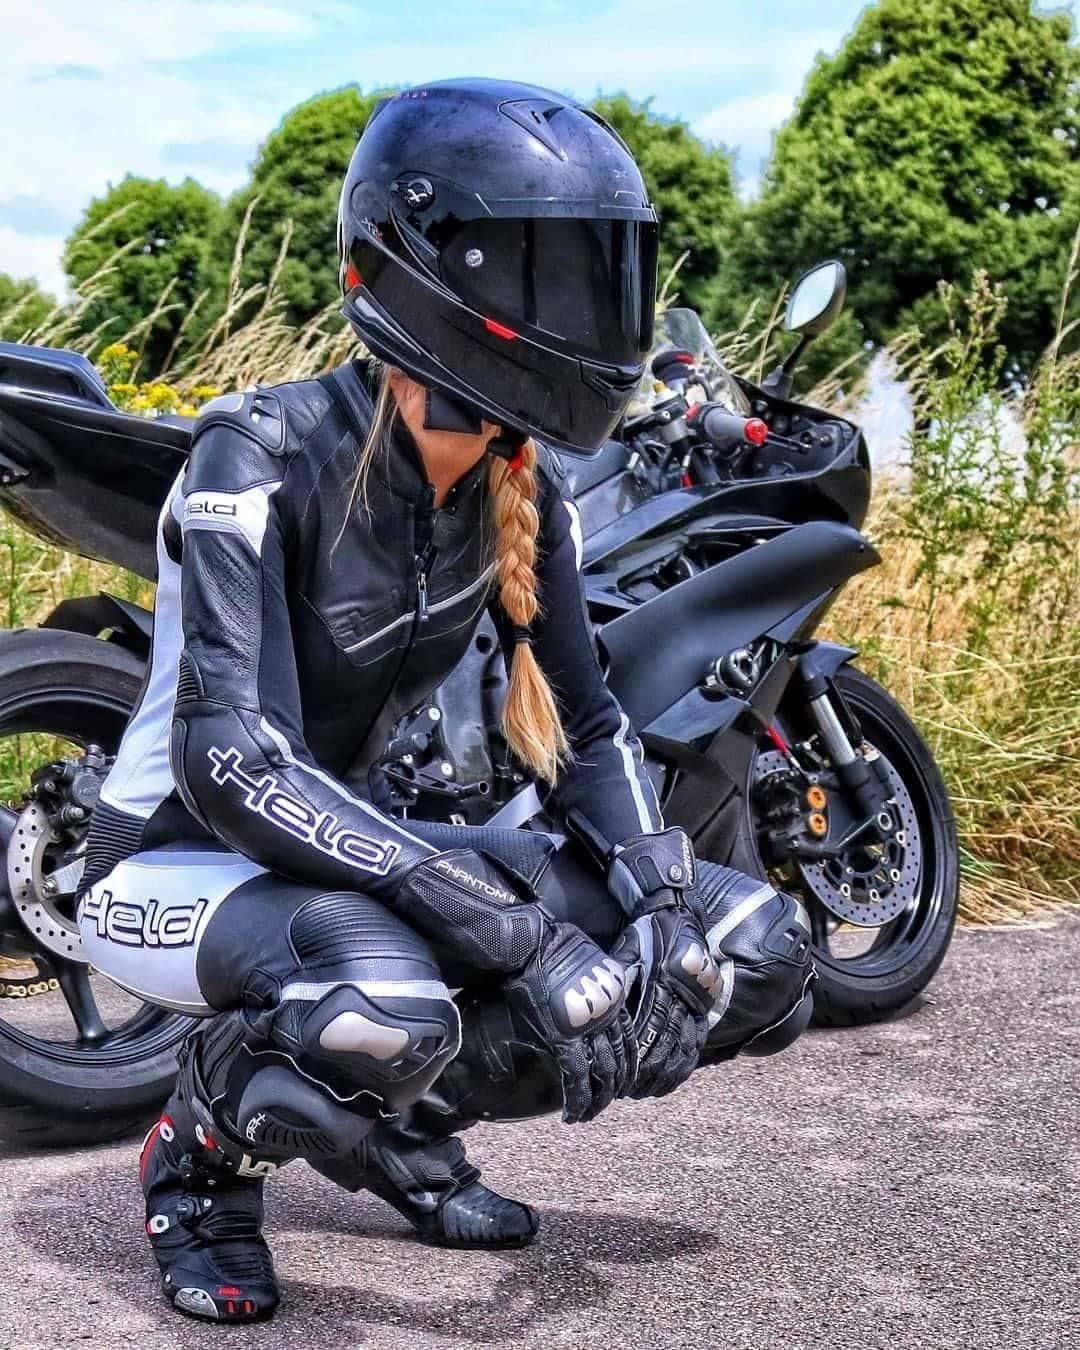 I migliori guanti di motocicletta sò l'estiu, l'invernu, a donna è l'omi.